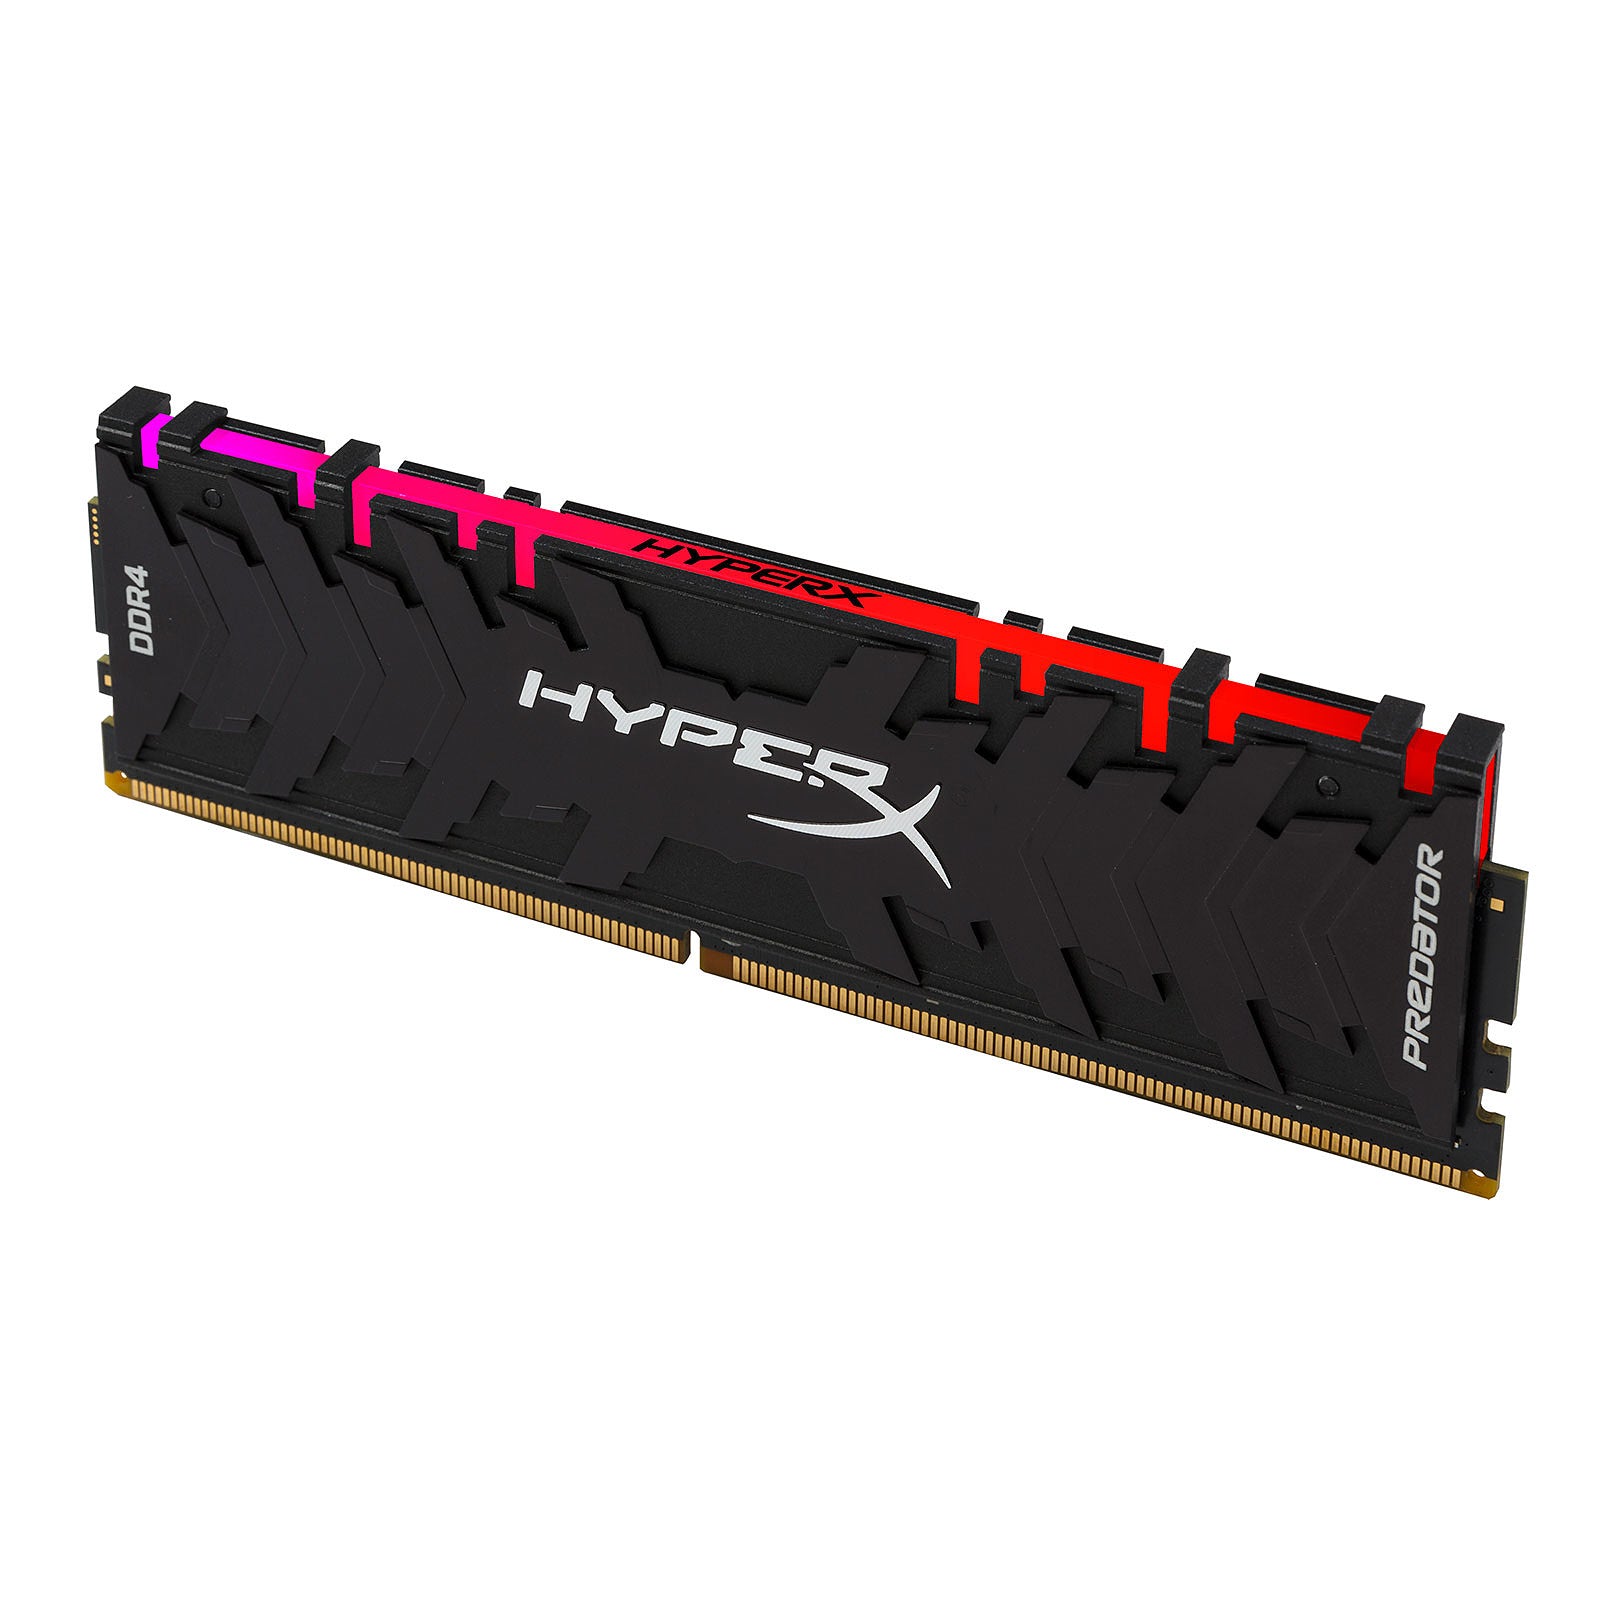 HyperX - Predator RGB DDR4 3200 MHz CL16 (8 Go)